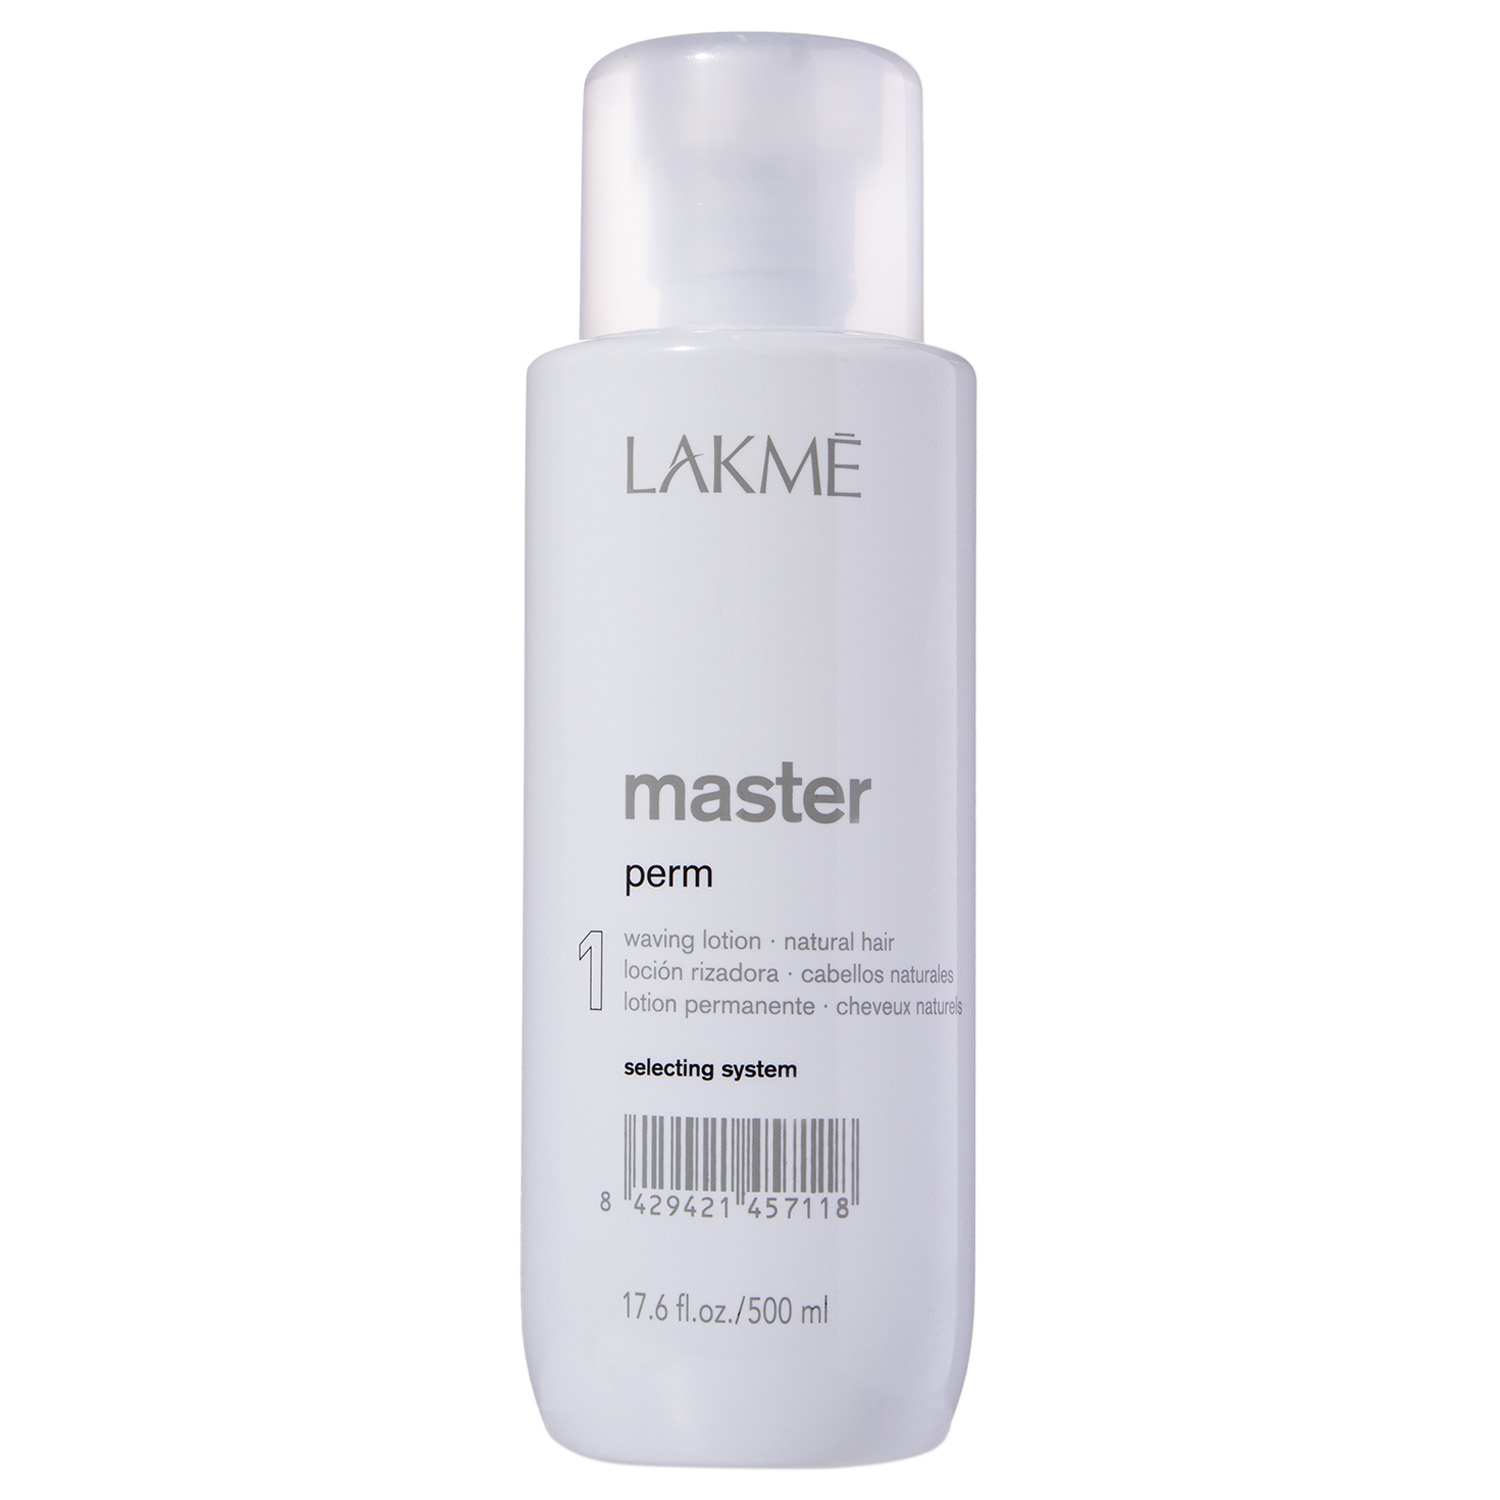 Lakme Лосьон для завивки нормальных волос 1 Perm Waving Lotion 1, 500 мл (Lakme, Master) revlon лосьон 0 для химической завивки 3 100 мл